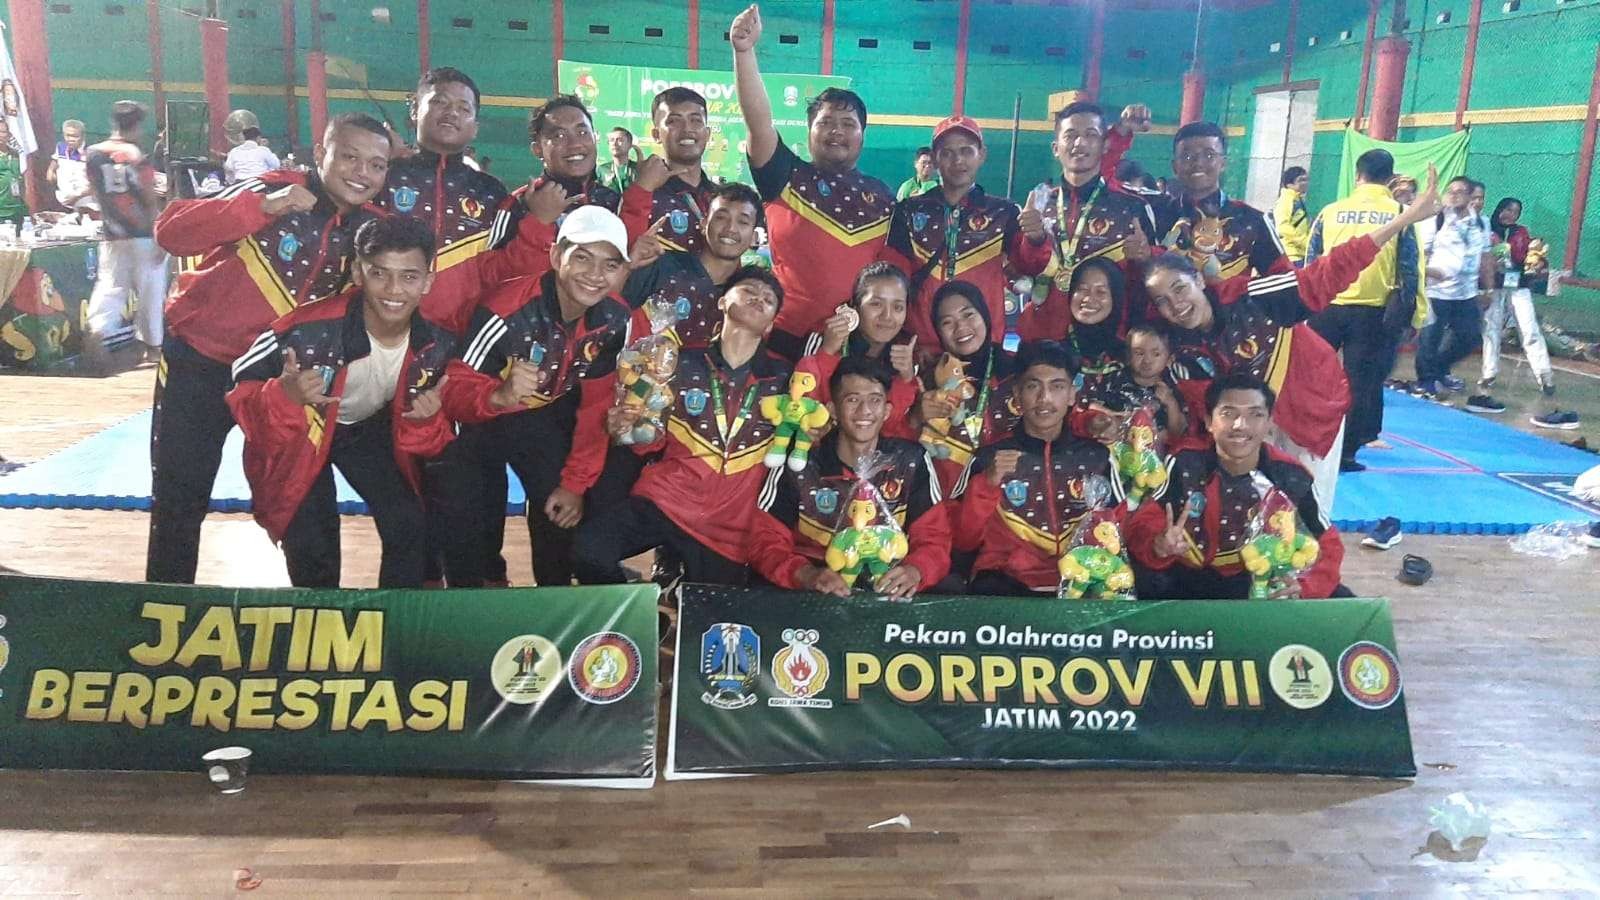 Jujitsu Ponorogo pada Porprov Jawa Timur VII 2022 berfoto bersama usai upacara penghormatan pemenang di Amanda Sport Center, Rabu 29 Juni 2022. (Foto: Istimewa)